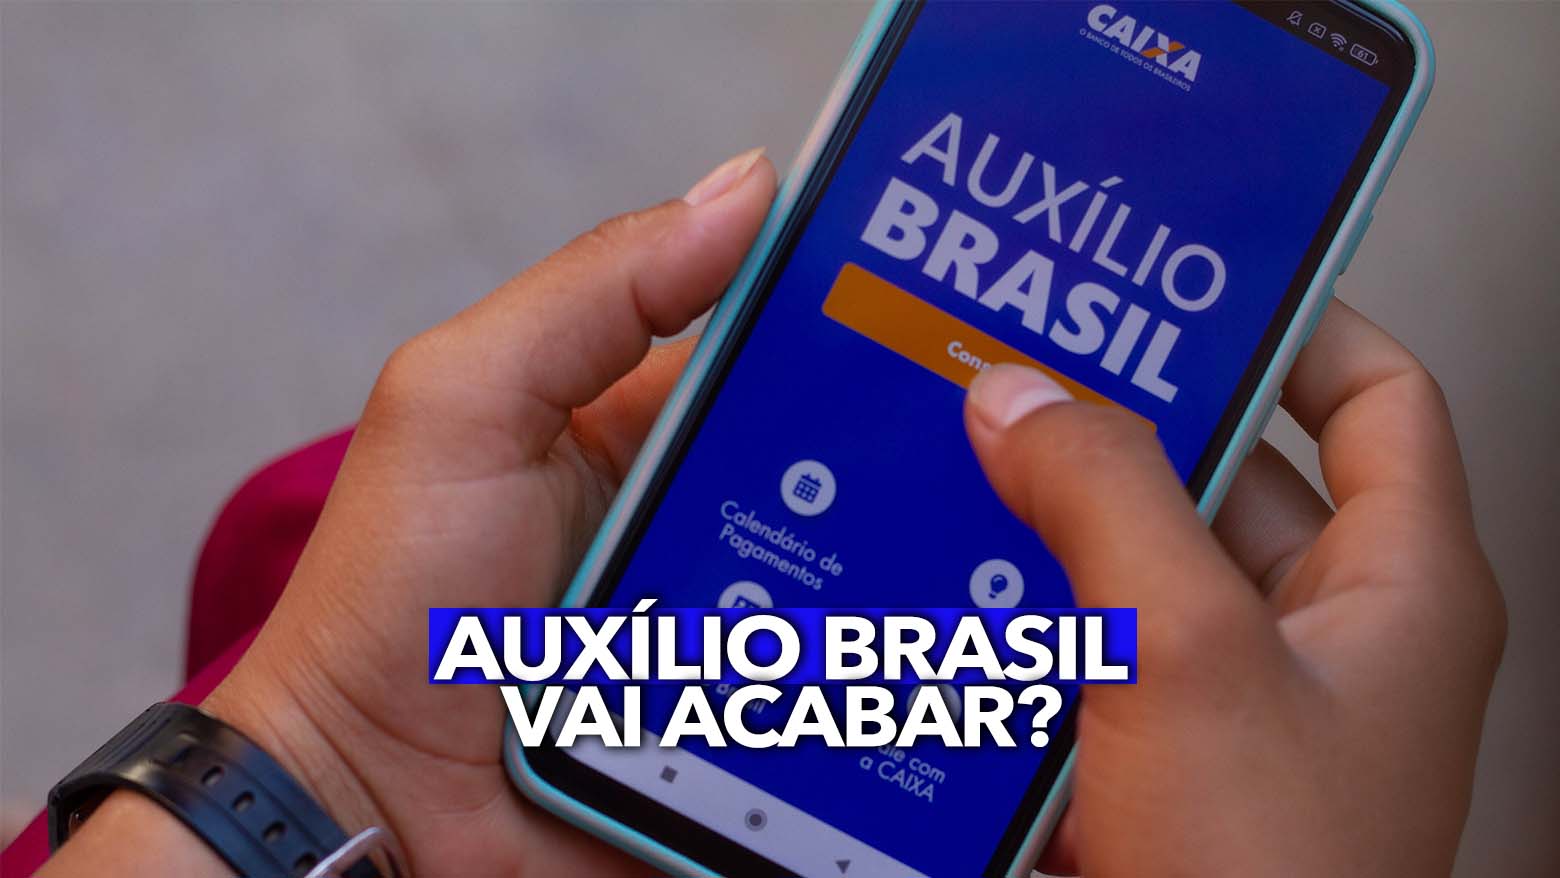 Auxílio Brasil vai acabar em 2023? Descubra a verdade!